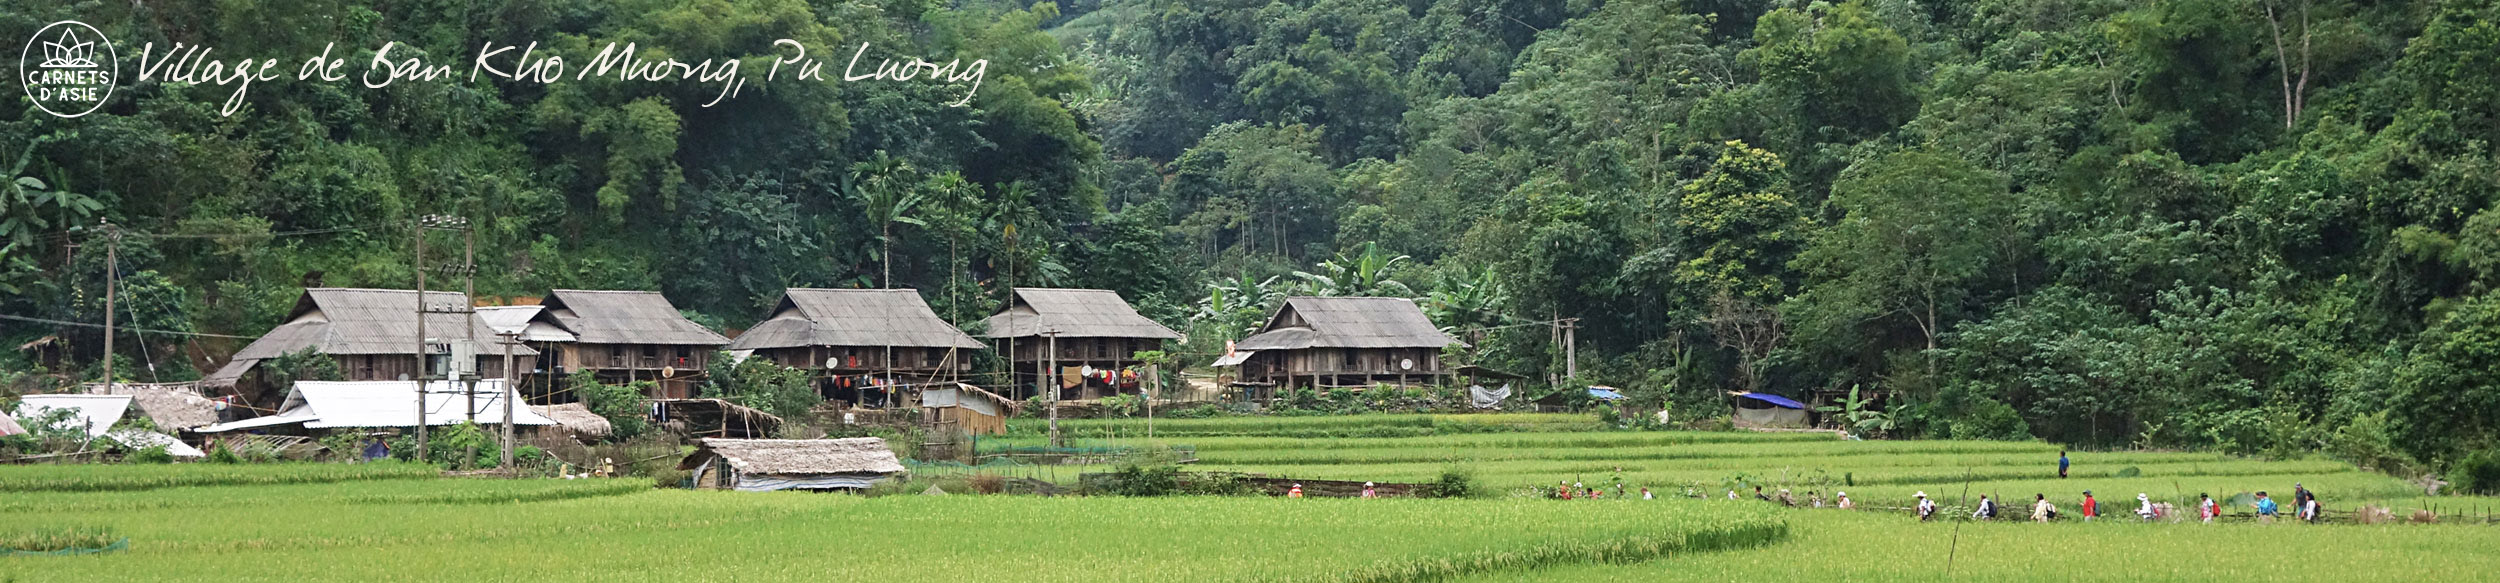 Village de Ban Kho Muong lors d'un trek dans la réserve de Pu Luong au Vietnam